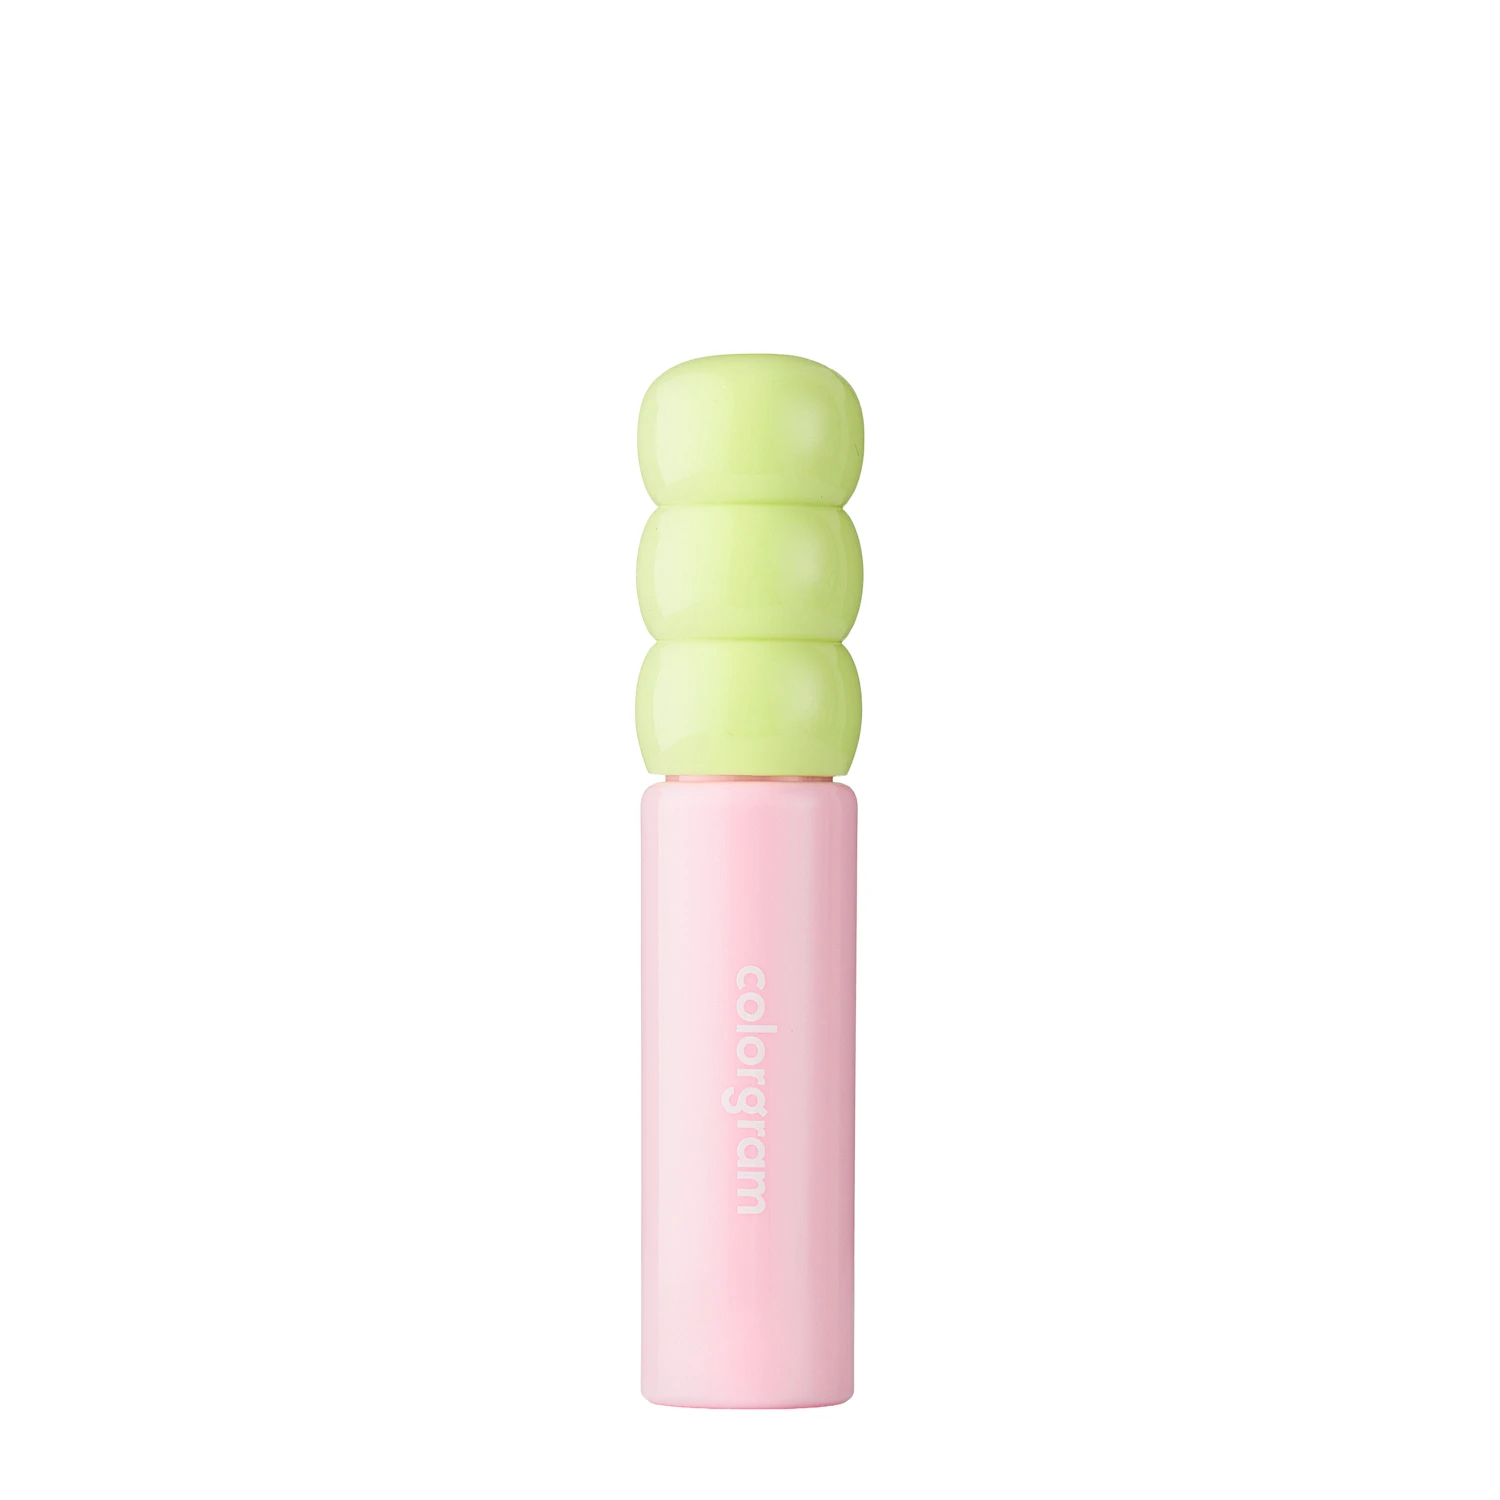 Colorgram - Fruity Glass Tint - Glänzende Lippentönung - Flashing Apricot - 3g